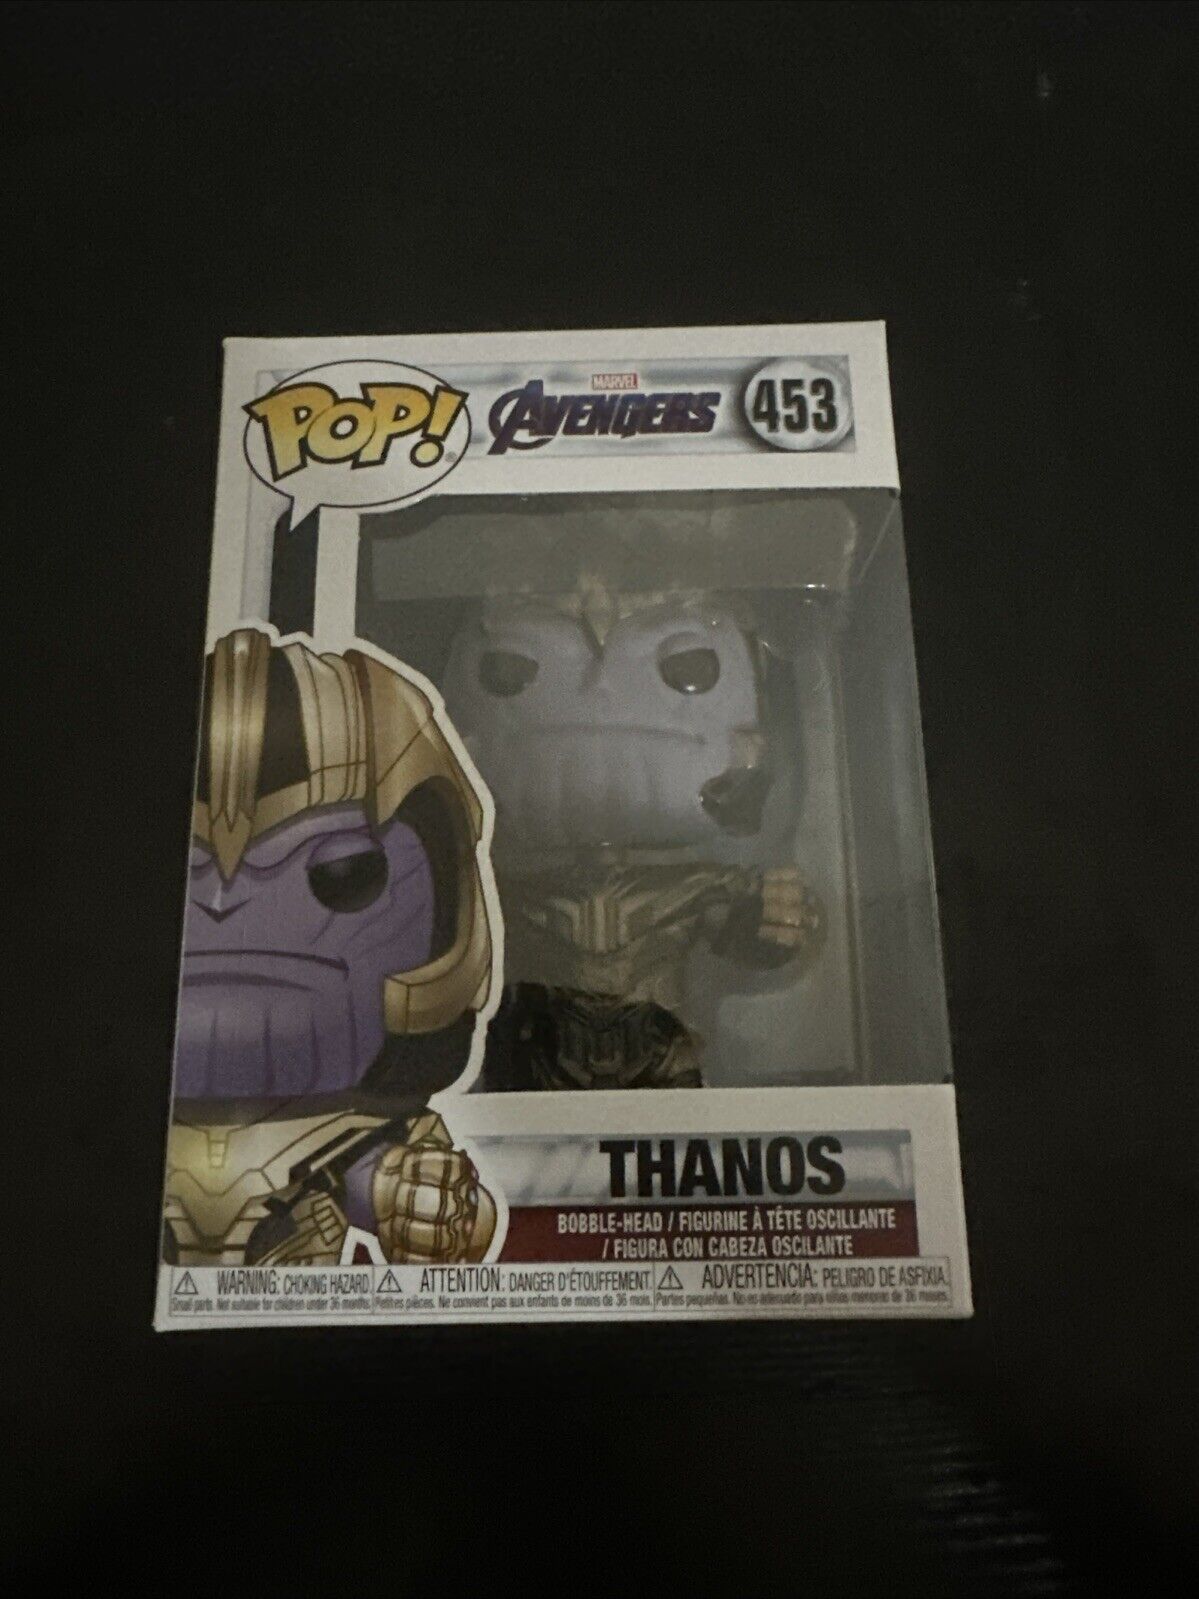 Funko Pop Vinyl: Avengers Marvel - Thanos 453